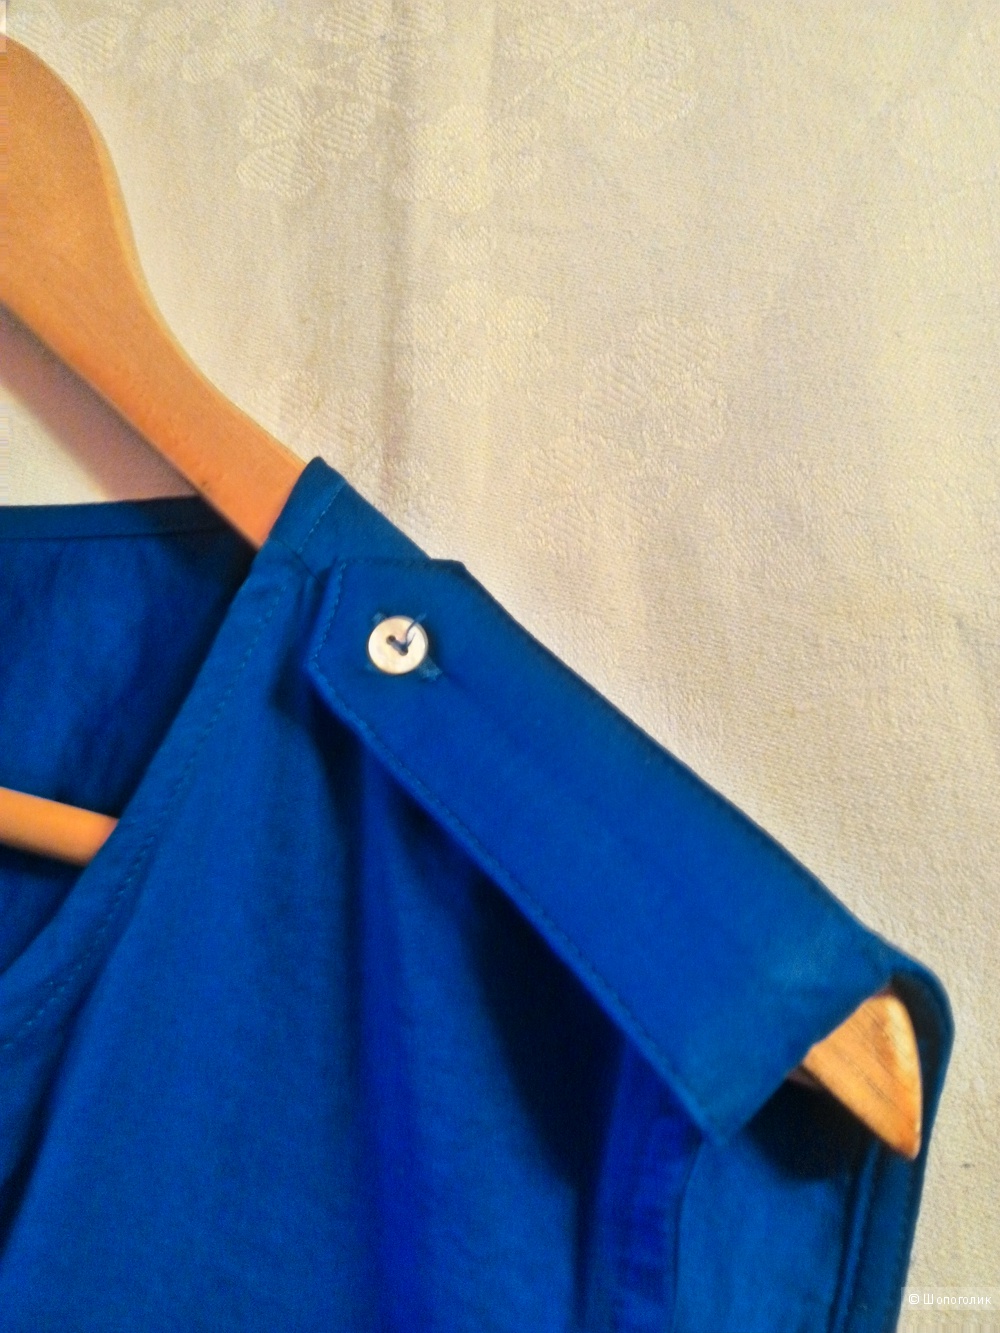 Ярко-синий летний топ-рубашка оверсайз H&M без рукавов, размер 50+ Российский